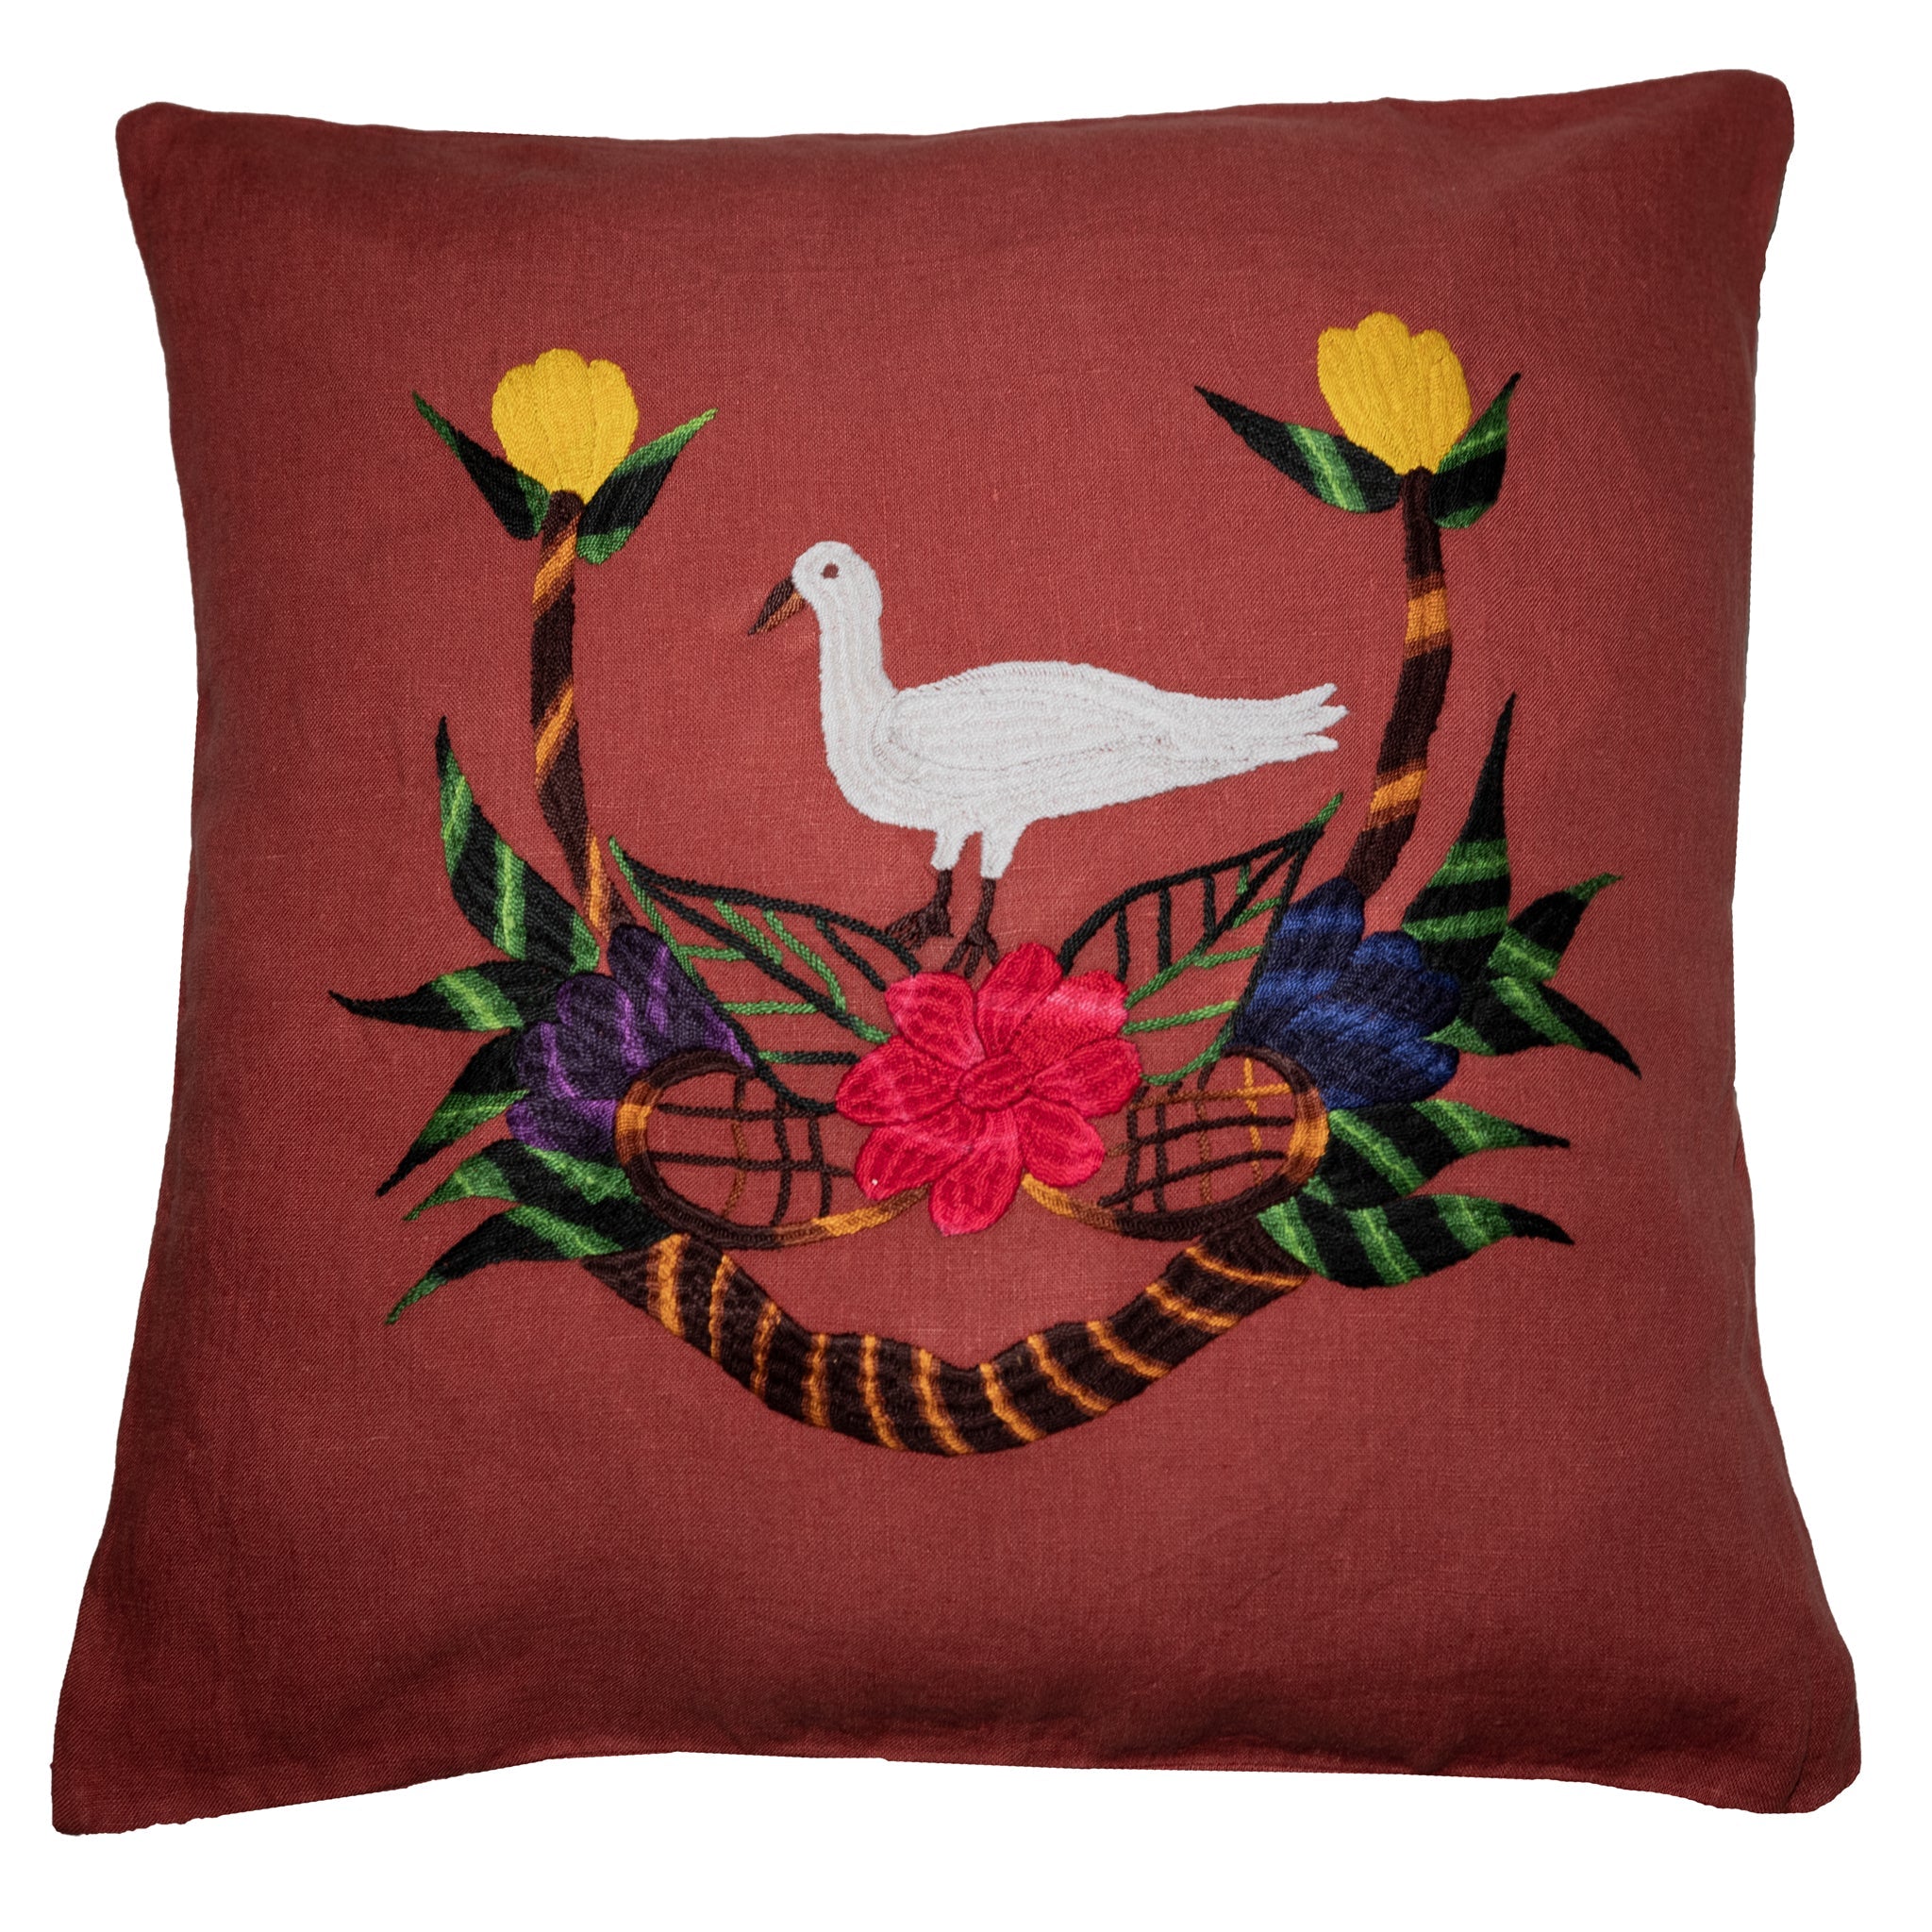 Bird pillow on red linen